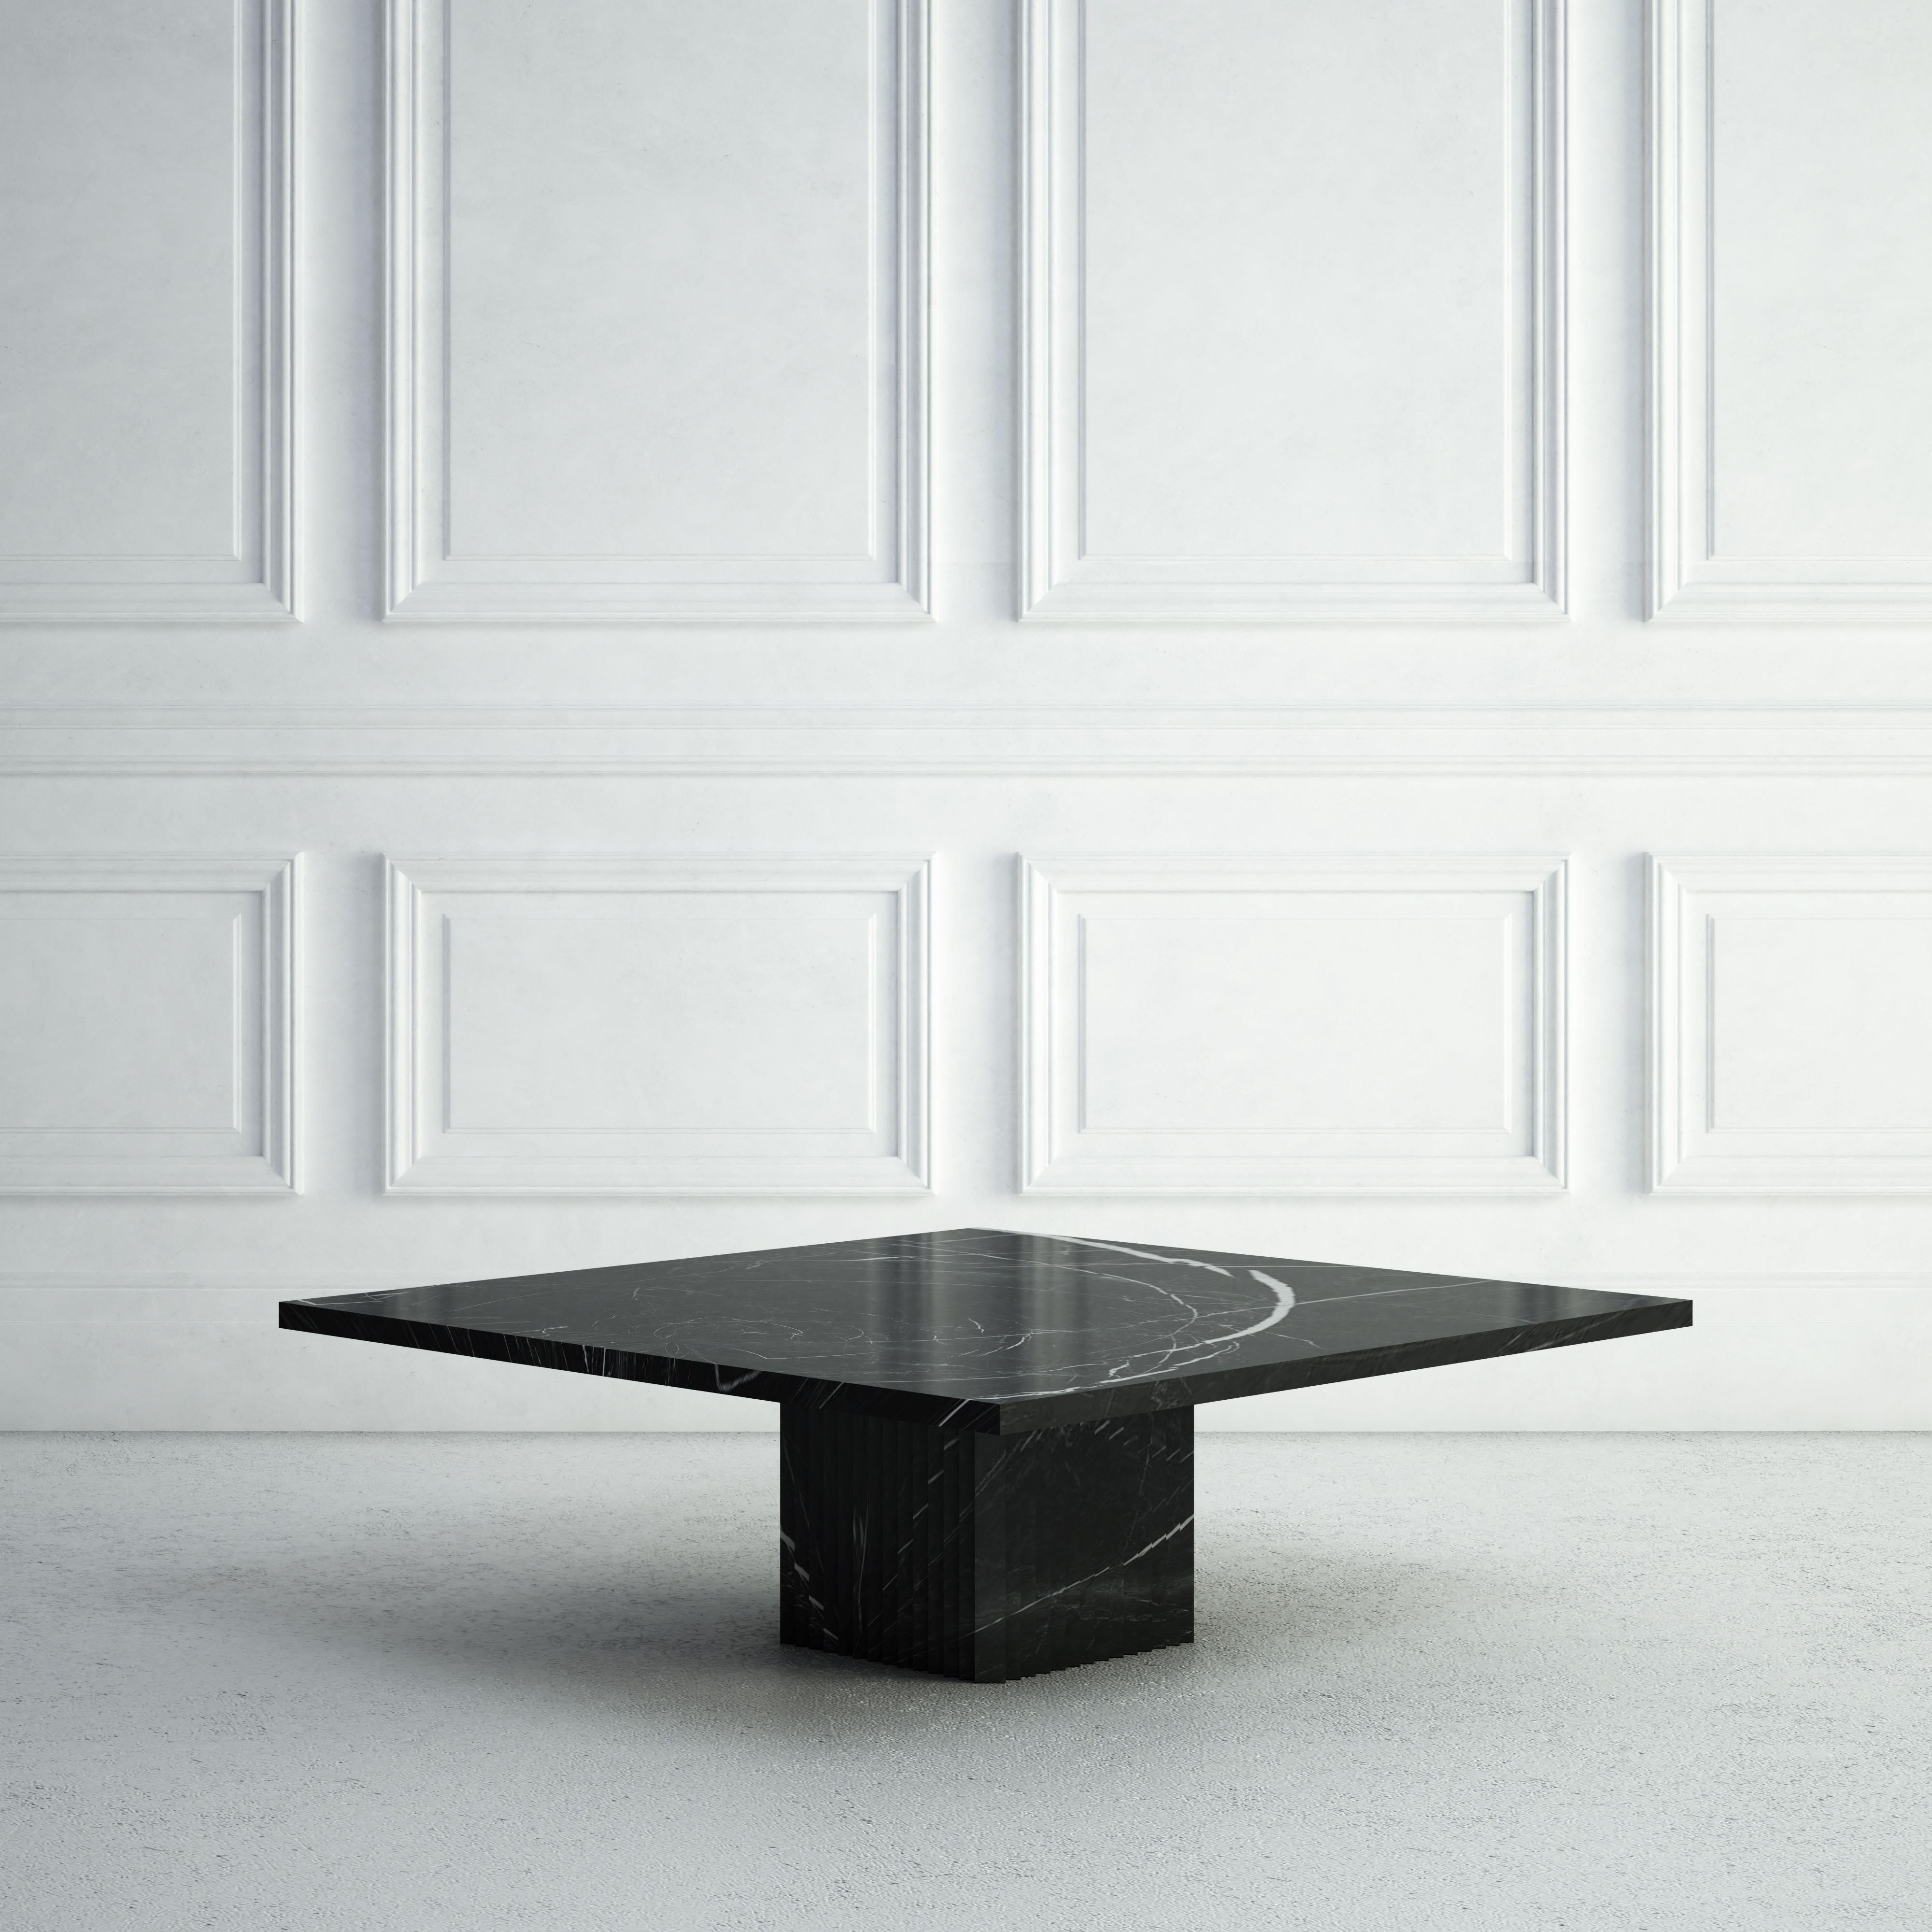 L'Odette est une table basse moderne et gracieuse.  Le sommet est constitué d'une élégante et mince dalle de pierre carrée, tandis que la base, également carrée, présente des crêtes verticales sculptées sur chacun de ses quatre côtés.  La même